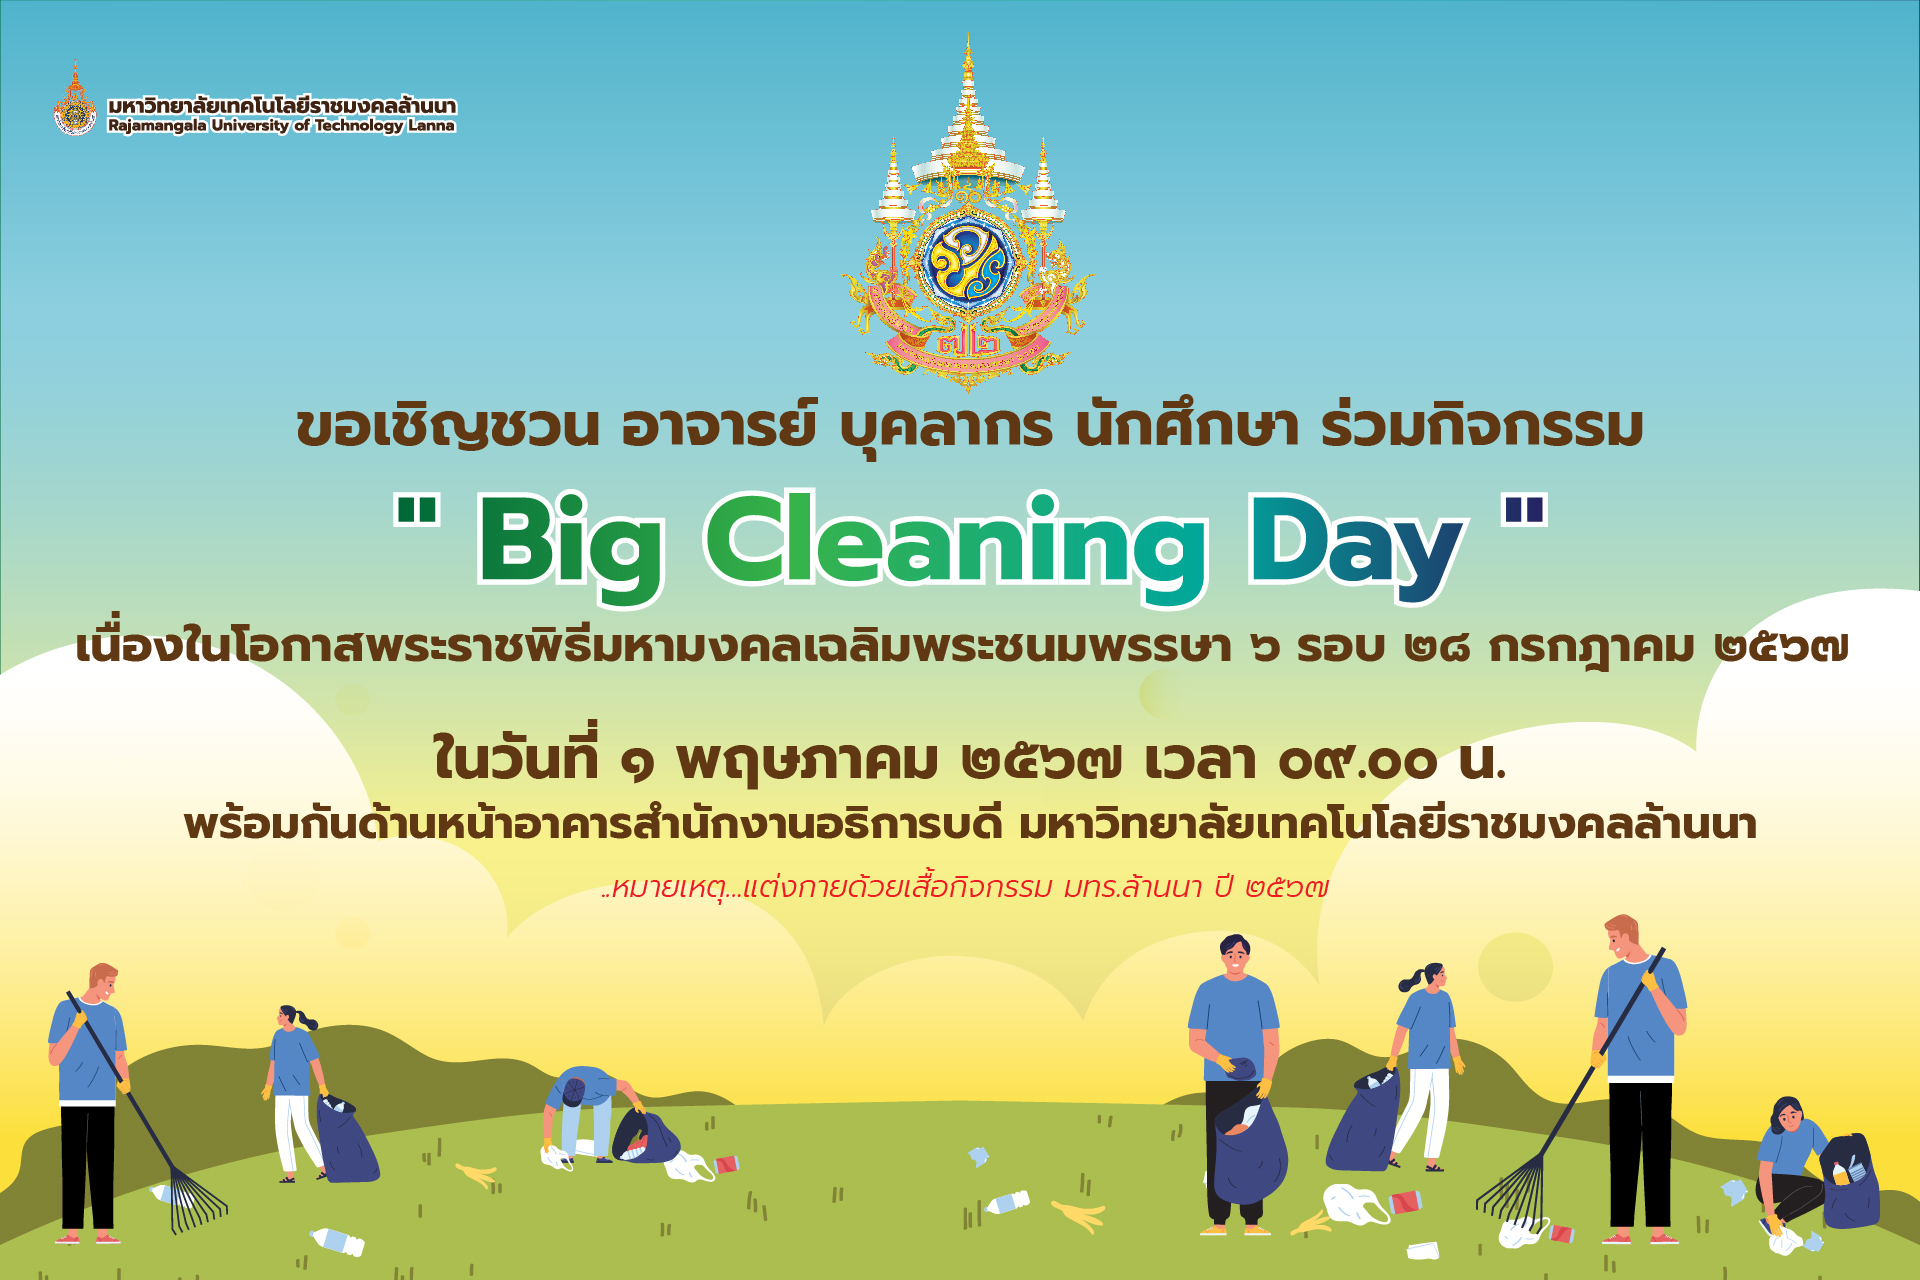 ร่วมกิจกรรม Big Cleaning Day เฉลิมพระเกียรติ ‘’ ในหลวง ’’ เนื่องในโอกาสพระราชพิธีมหามงคลเฉลิมพระชนมพรรษา ๖ รอบ (๒๘ กรกฎาคม ๒๕๖๗)